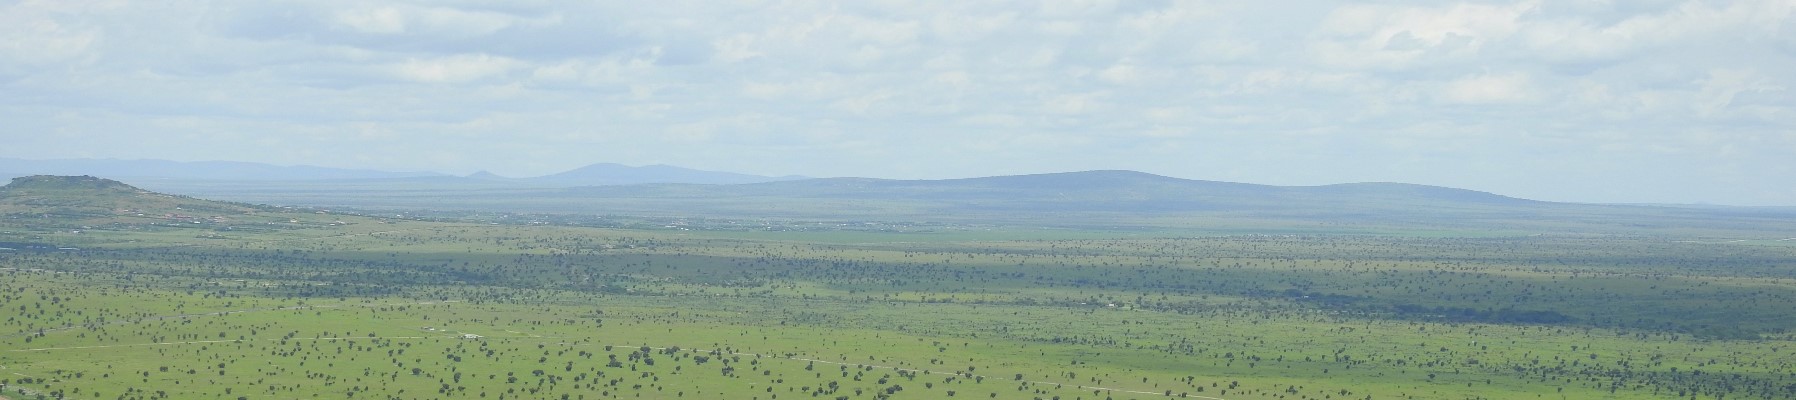 Kenyan plains